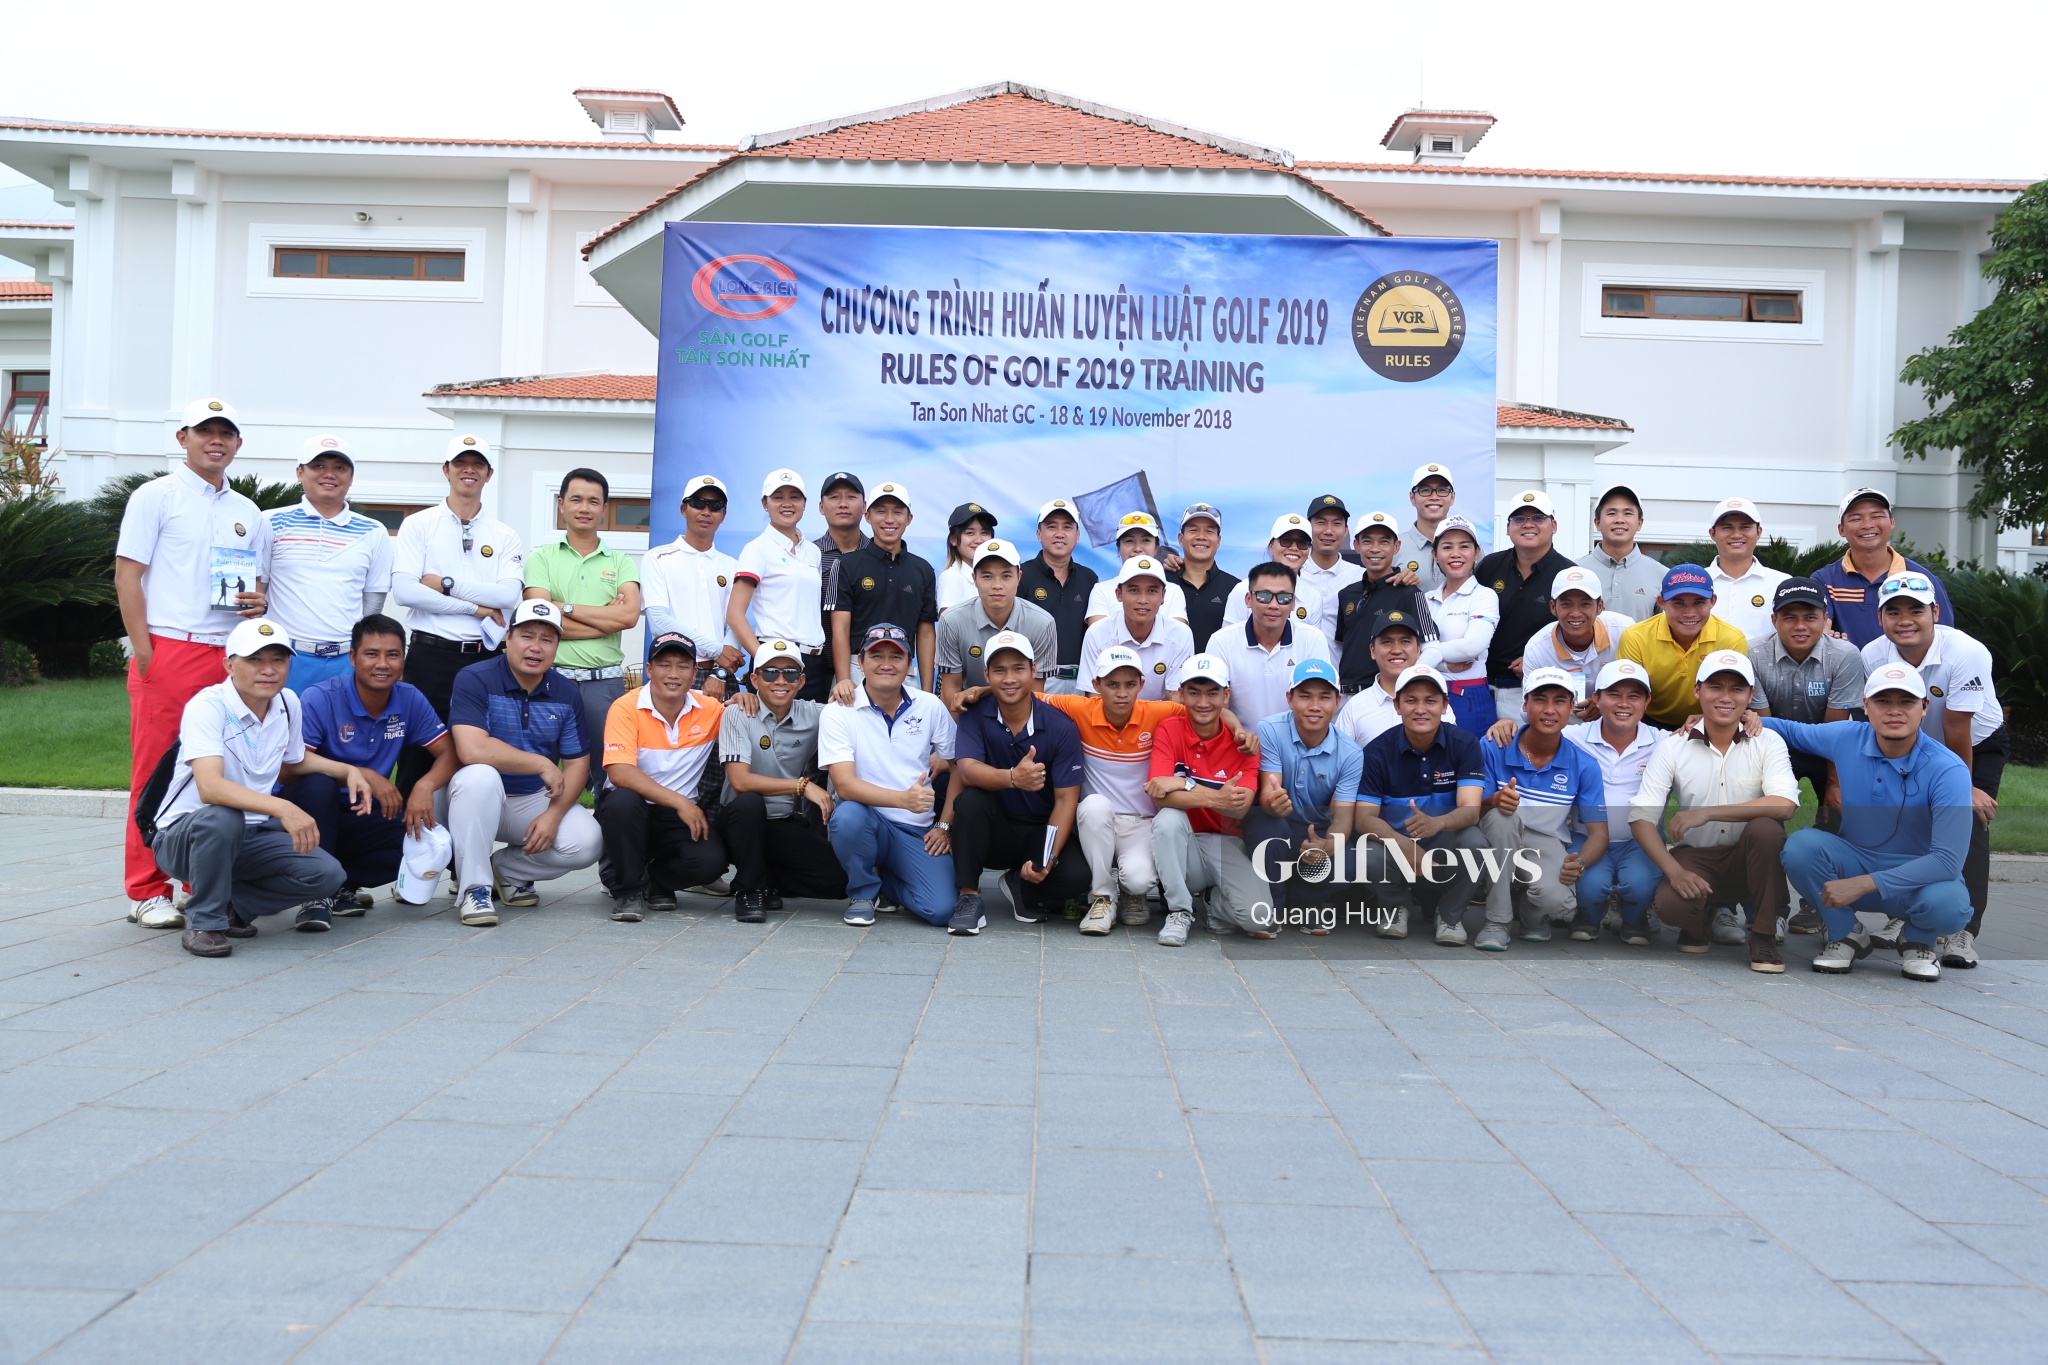 Chương trình huấn luyện Luật golf 2019: Bước tiến mới của golf Việt